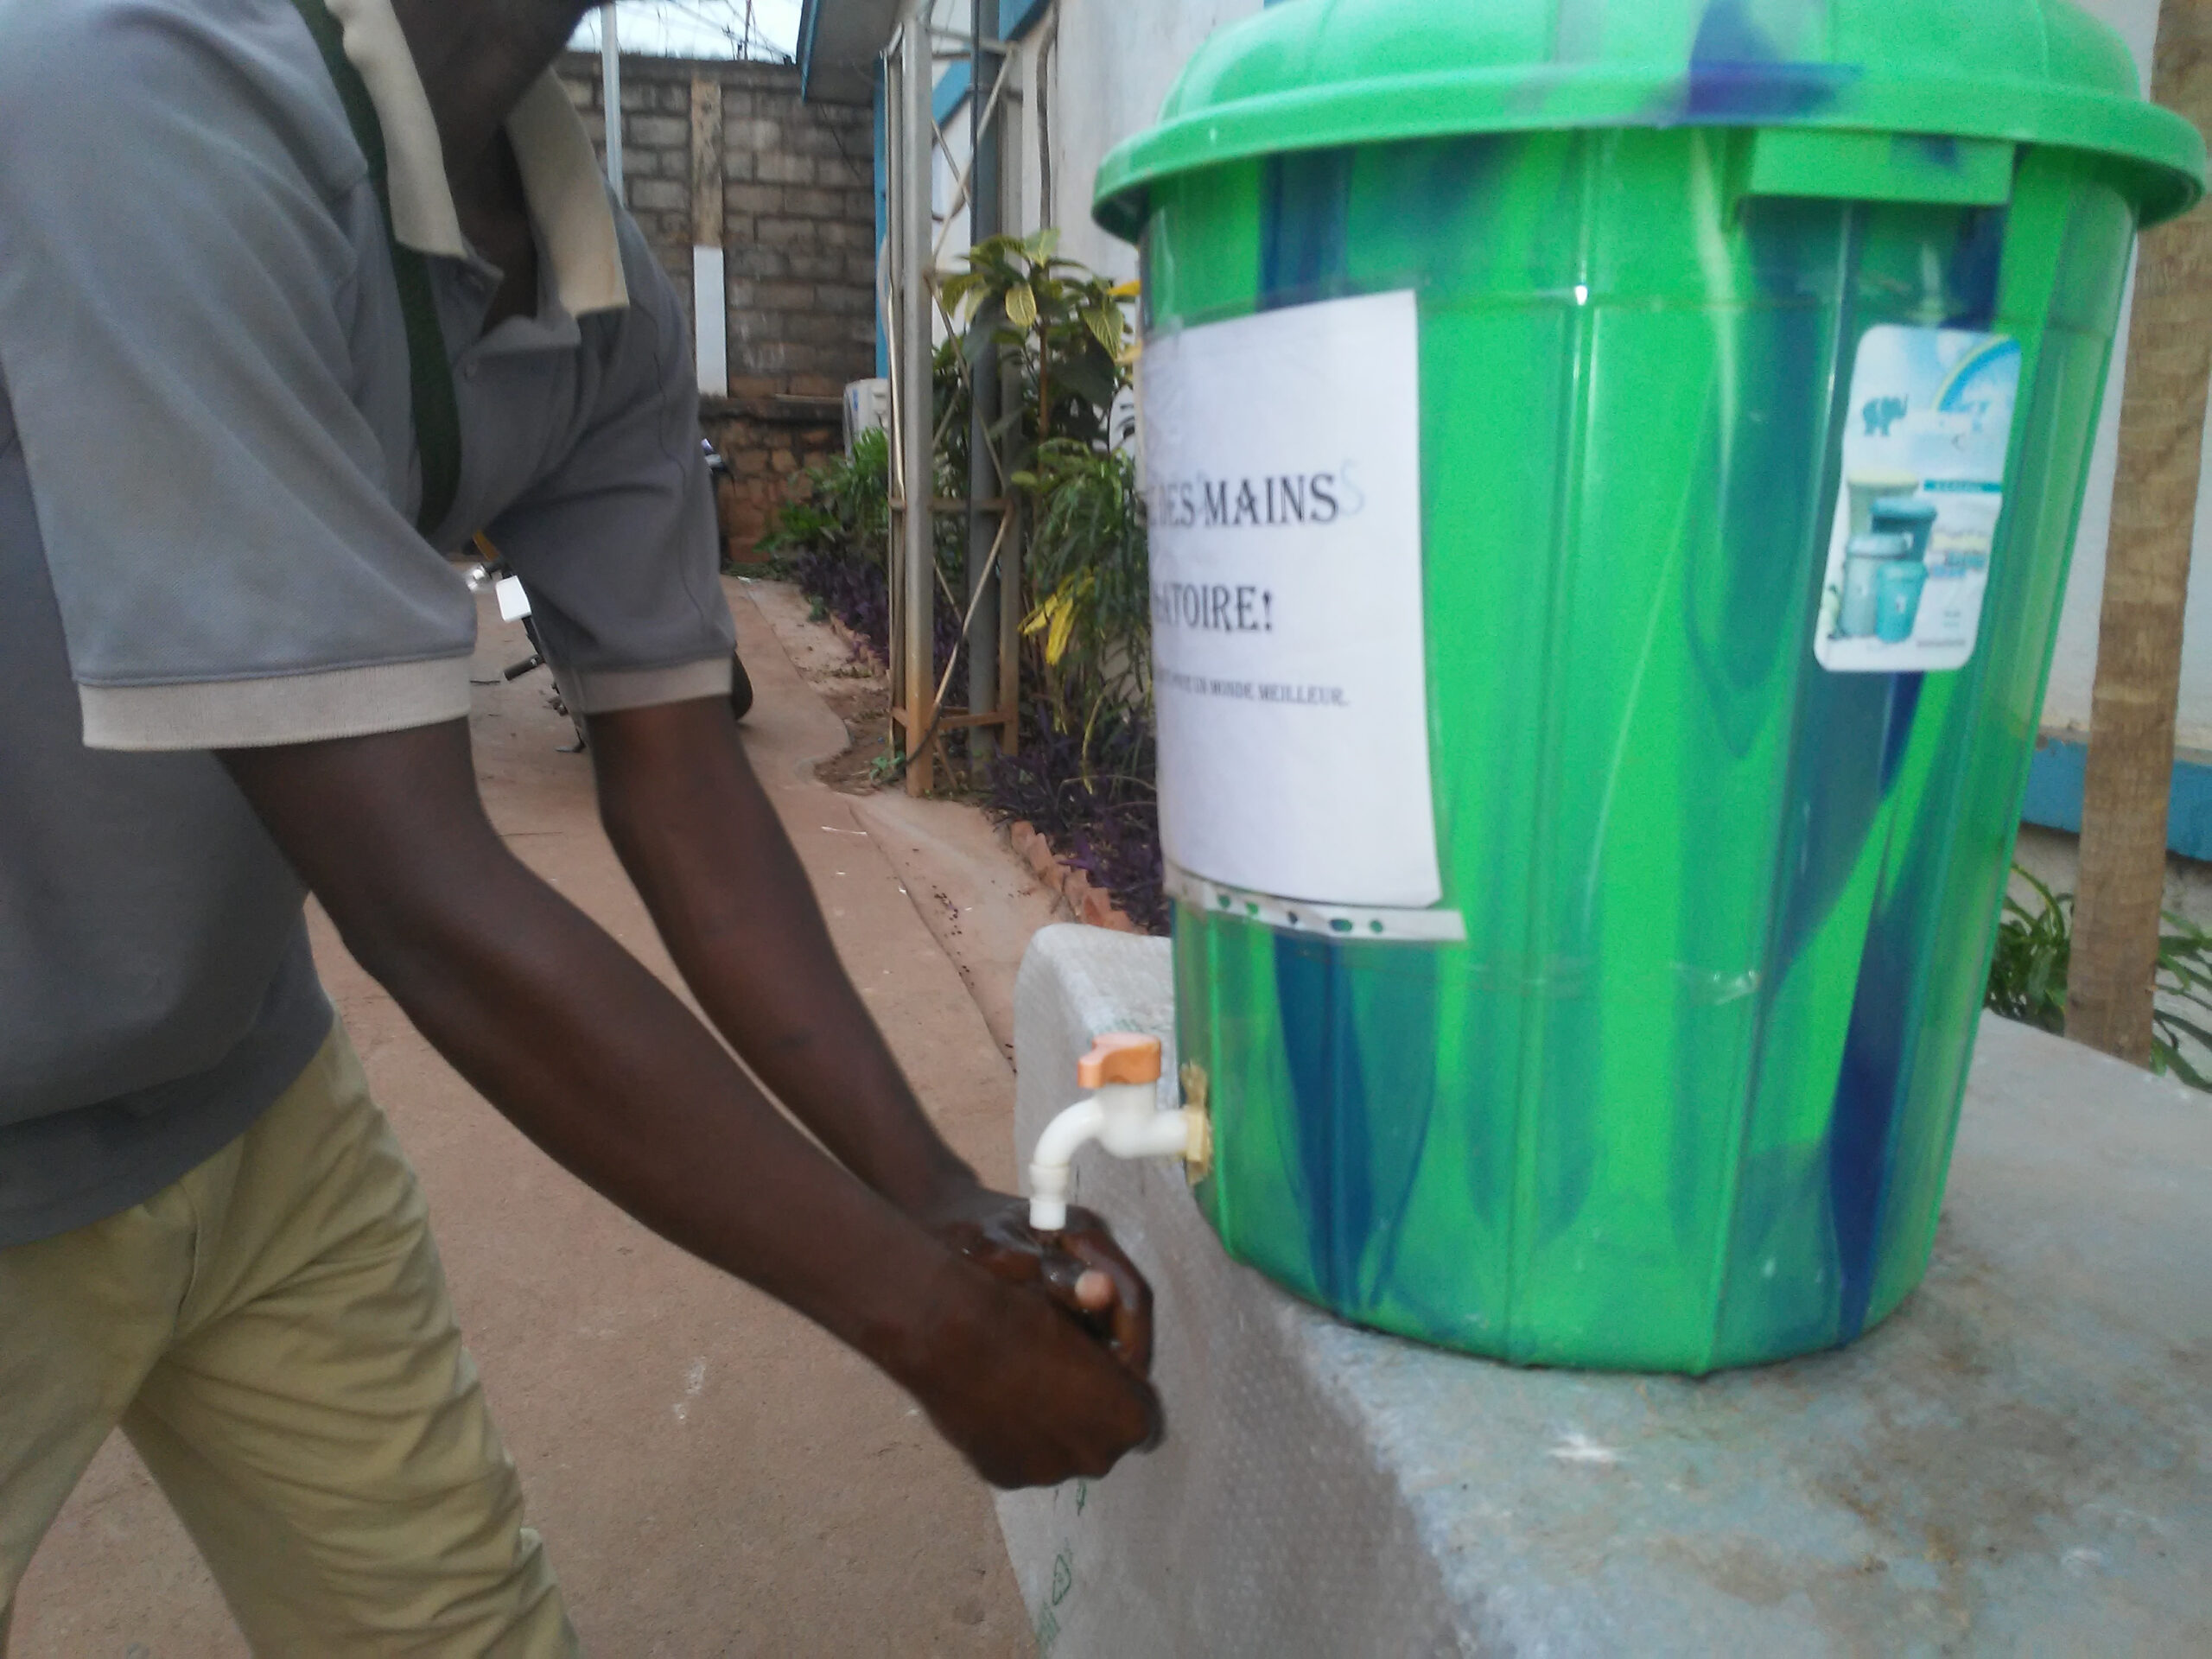 Lavage des mains une mesure préventive contre coronavirus